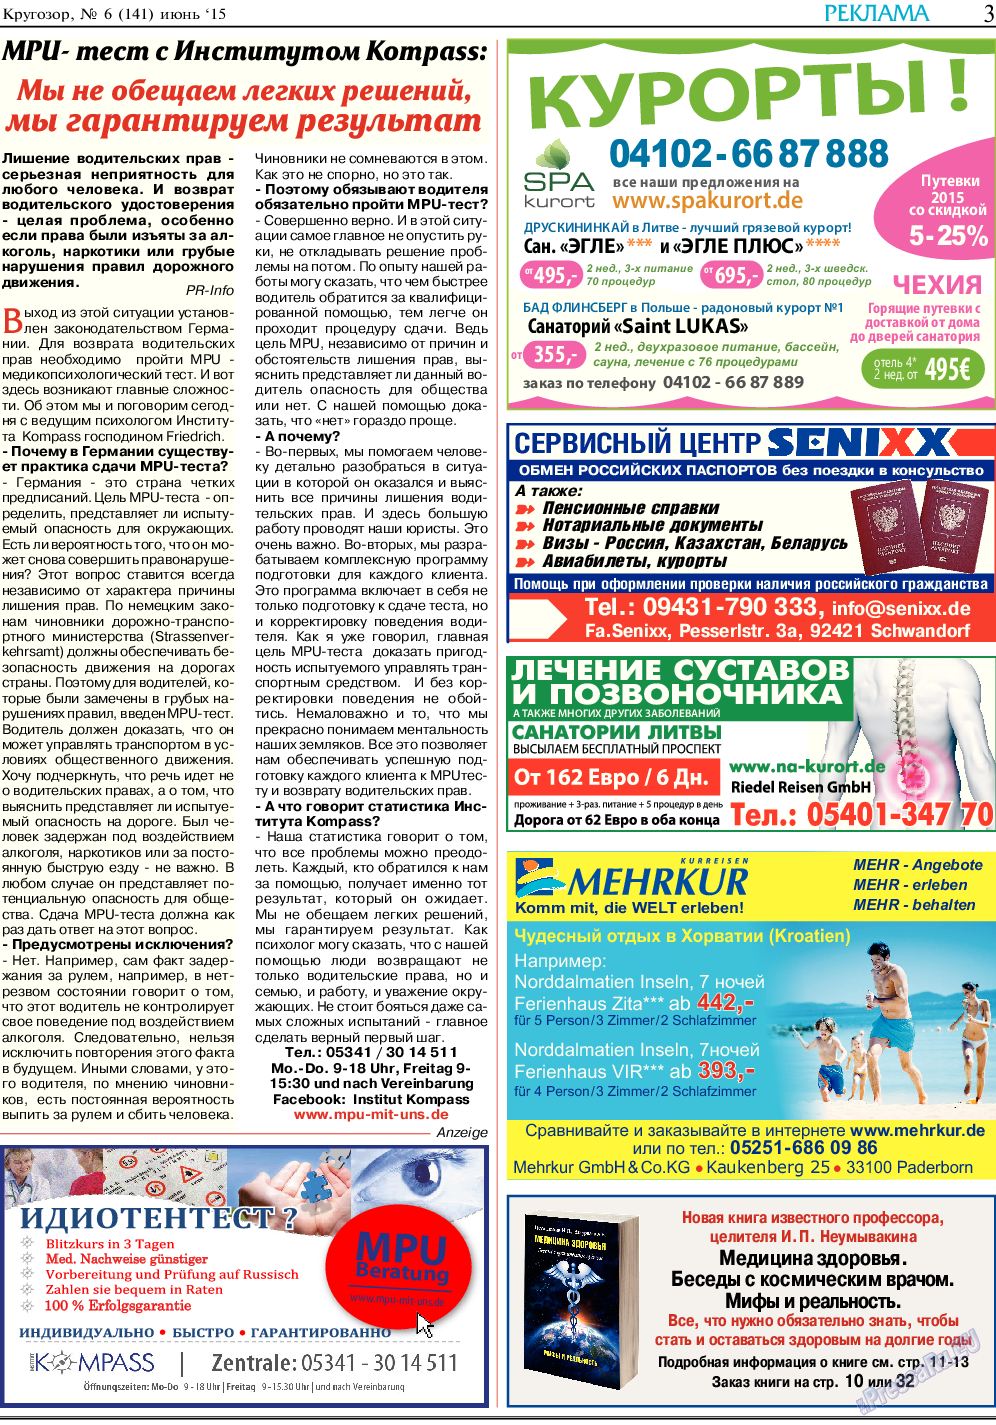 Кругозор, газета. 2015 №6 стр.3